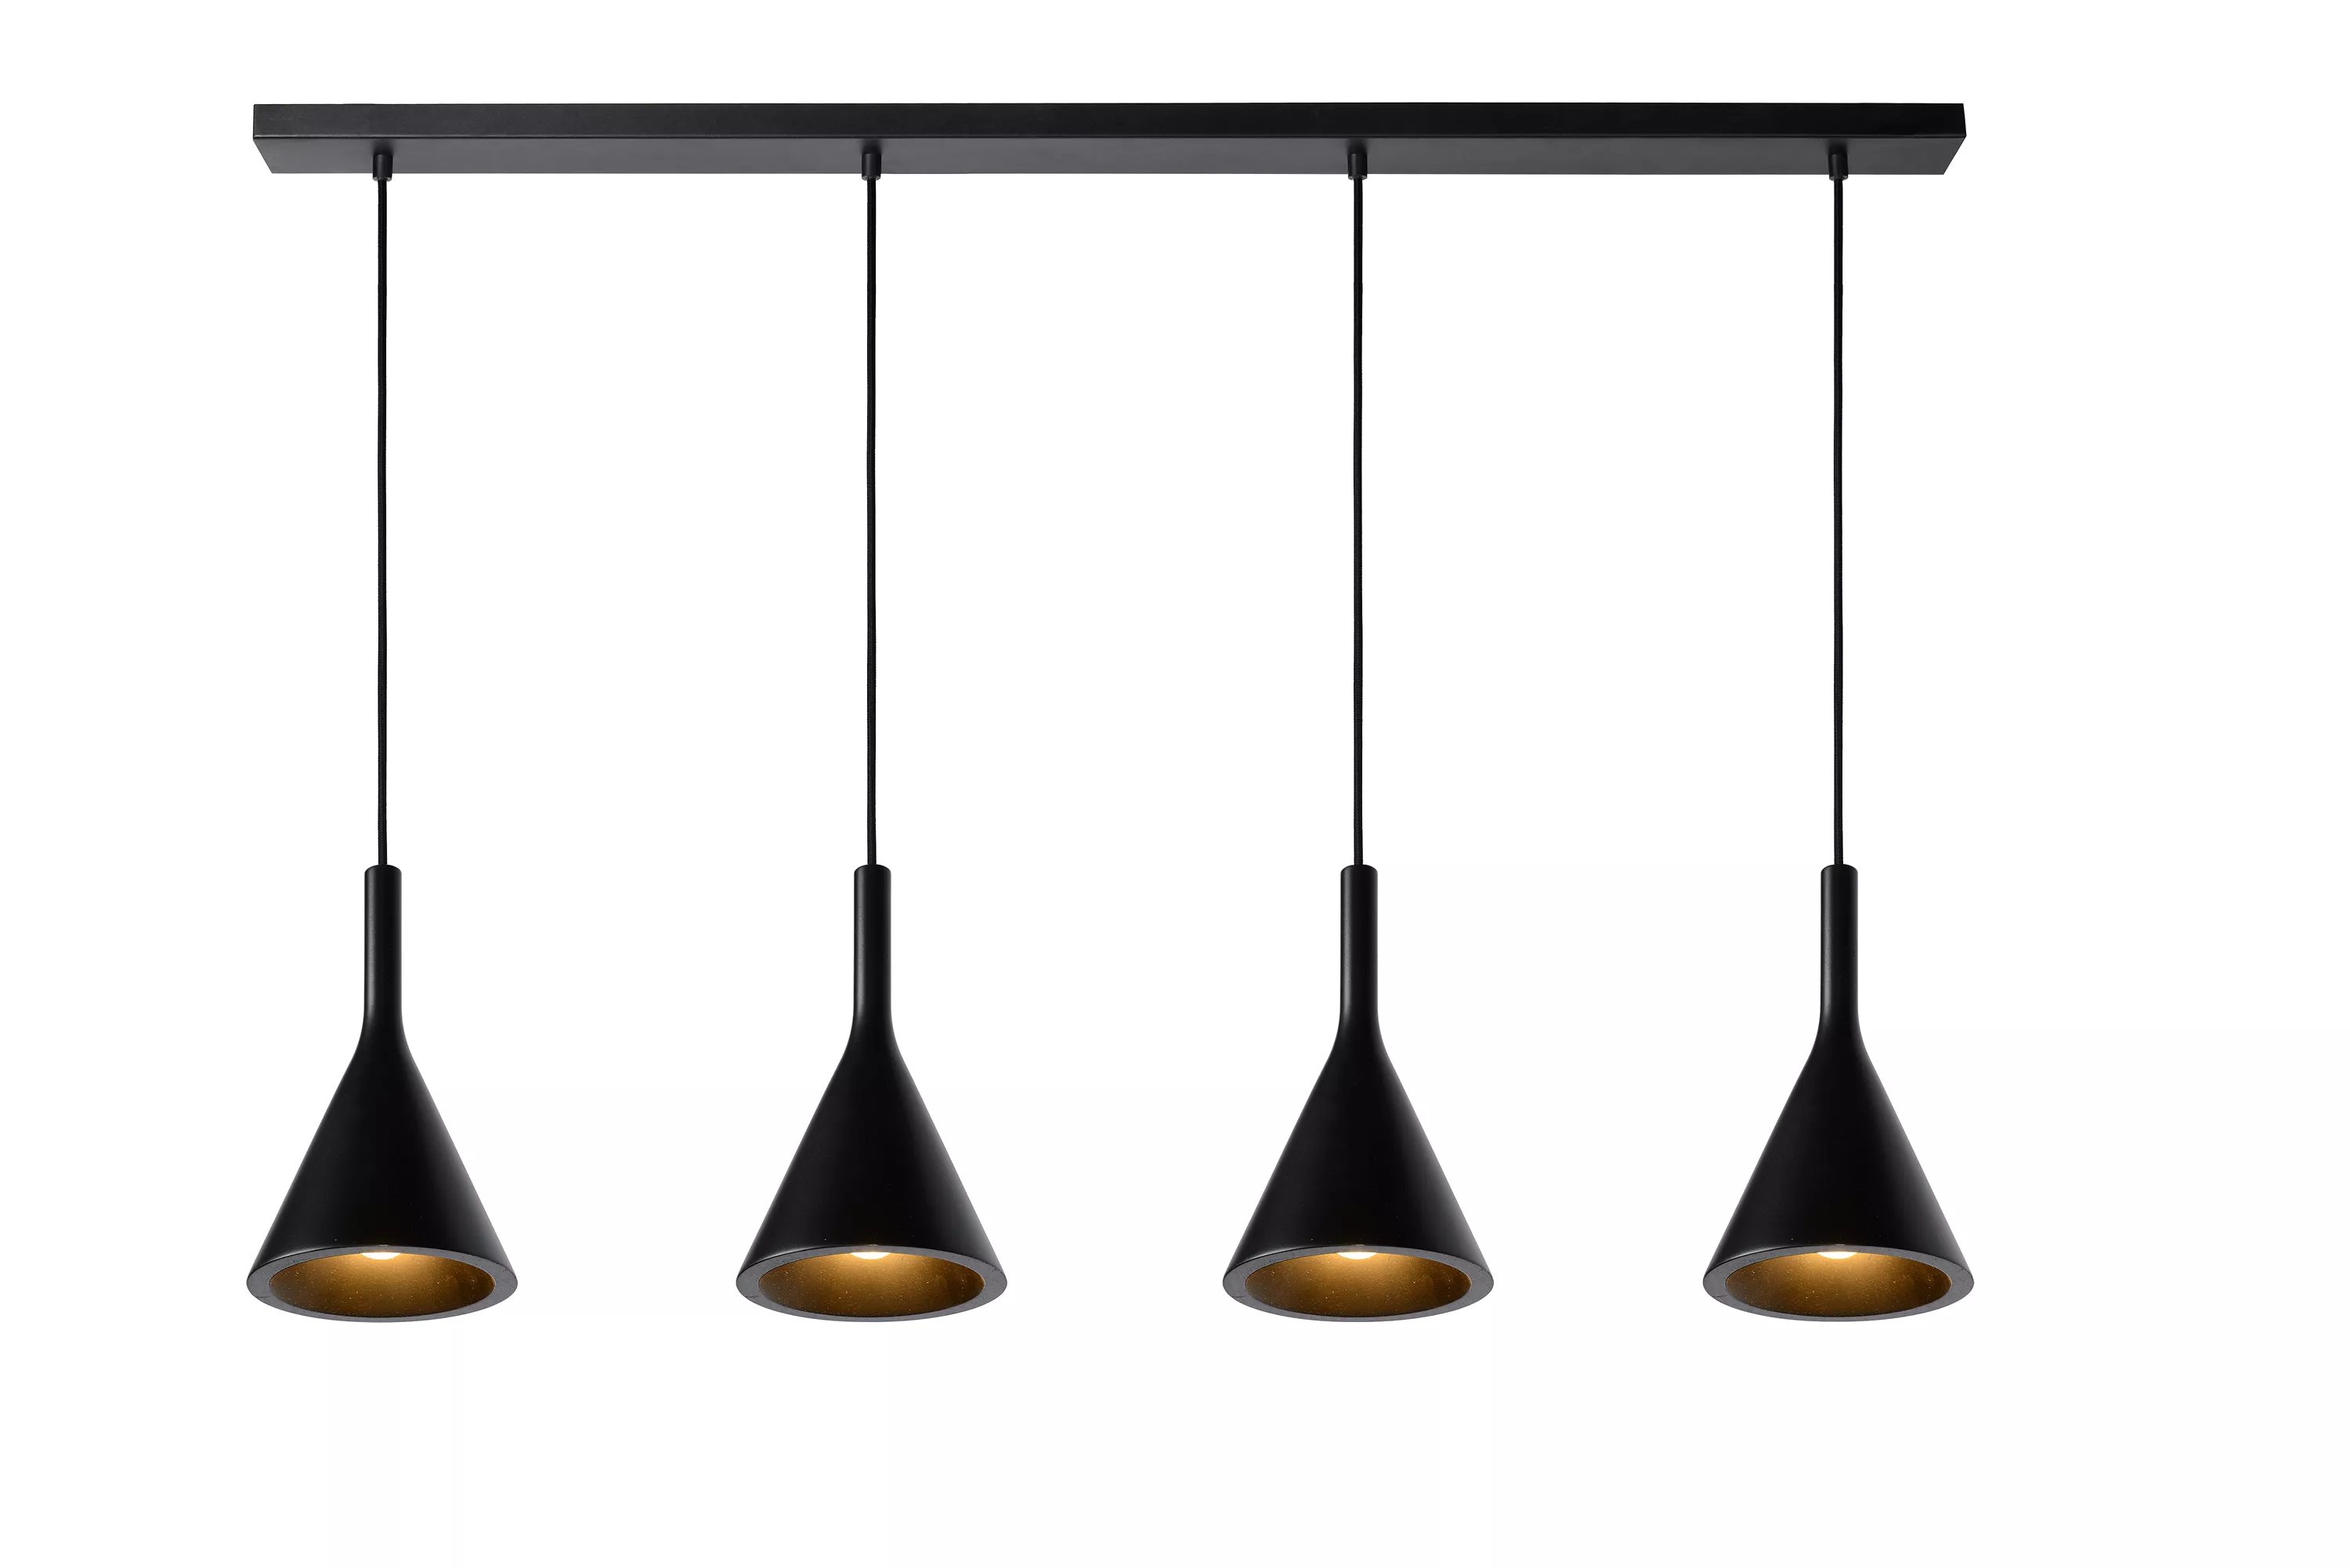 Elegantné závesné svietidlo Gipsy so 4 tienidlami, ktoré sa hodí do každého interiéru. V minimalistickom čiernom vyhotovení.